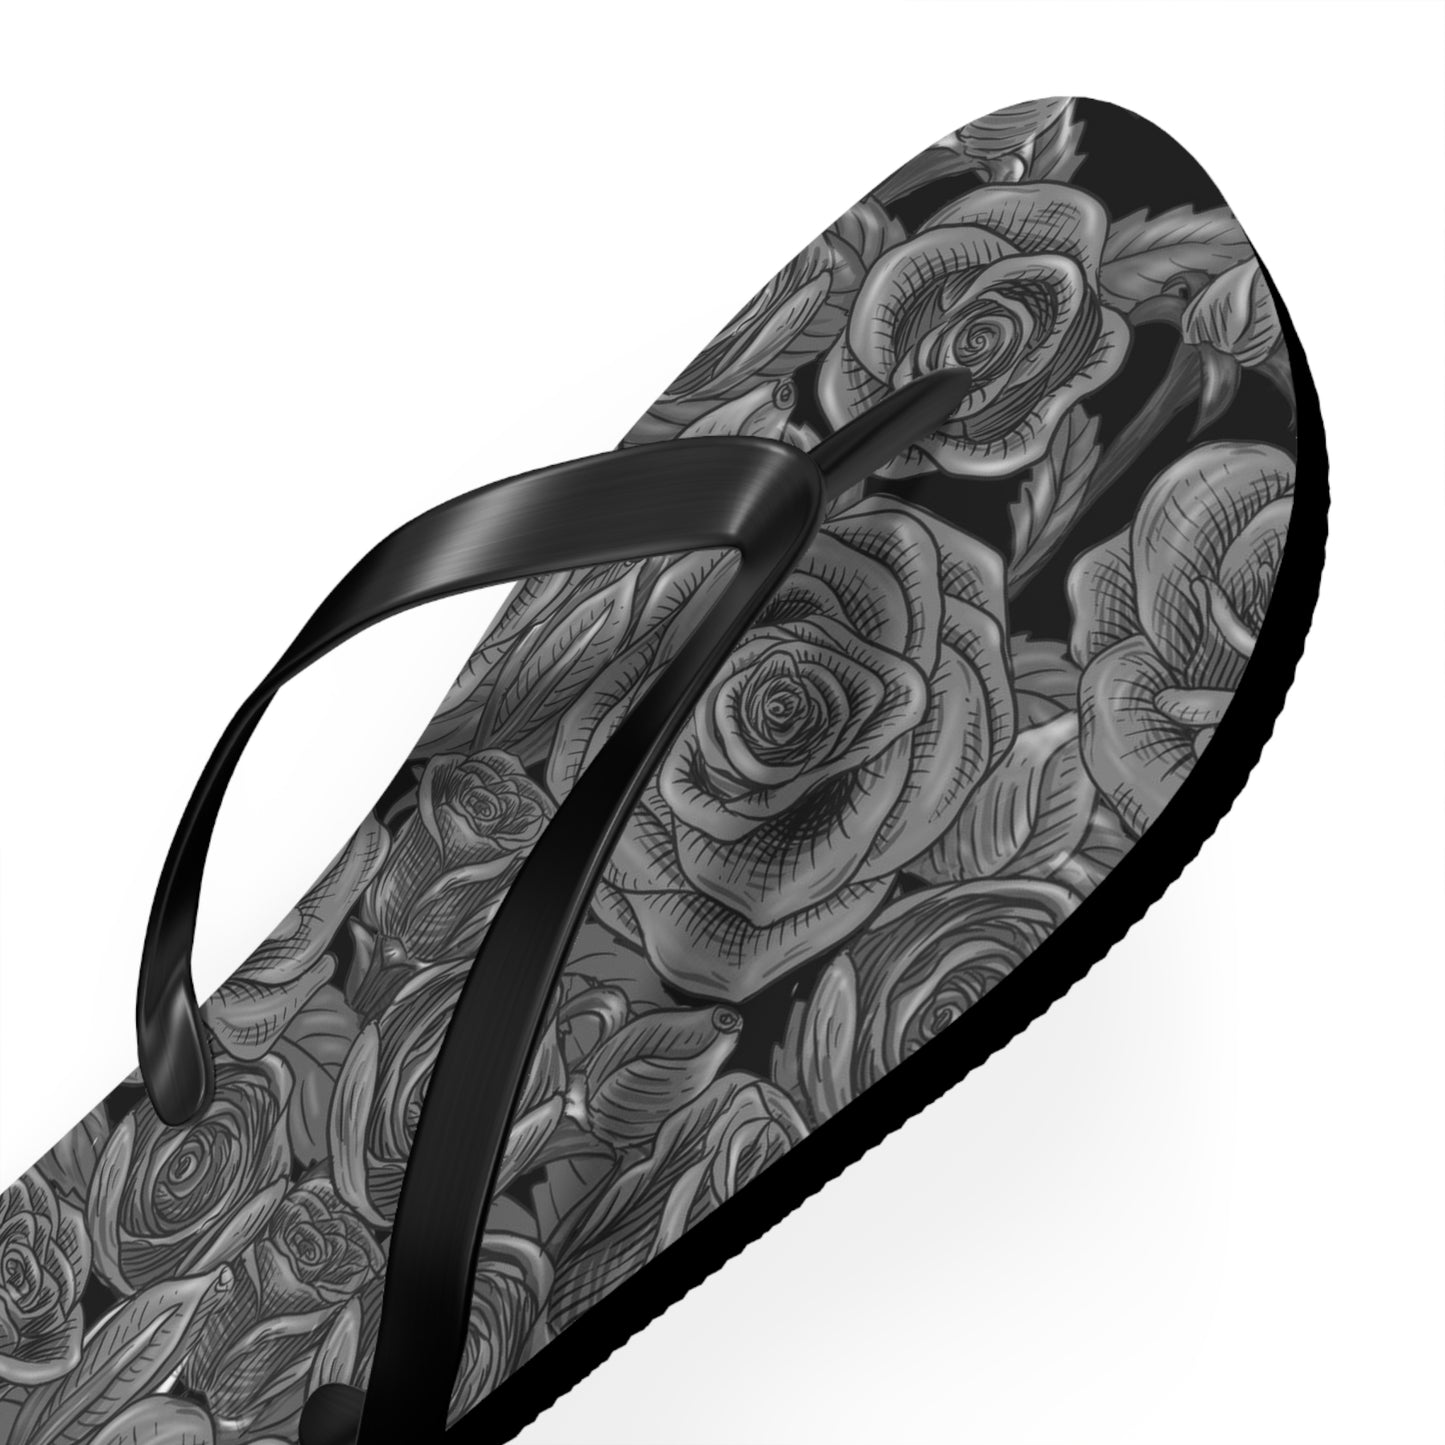 Black Rose Flip-Flops